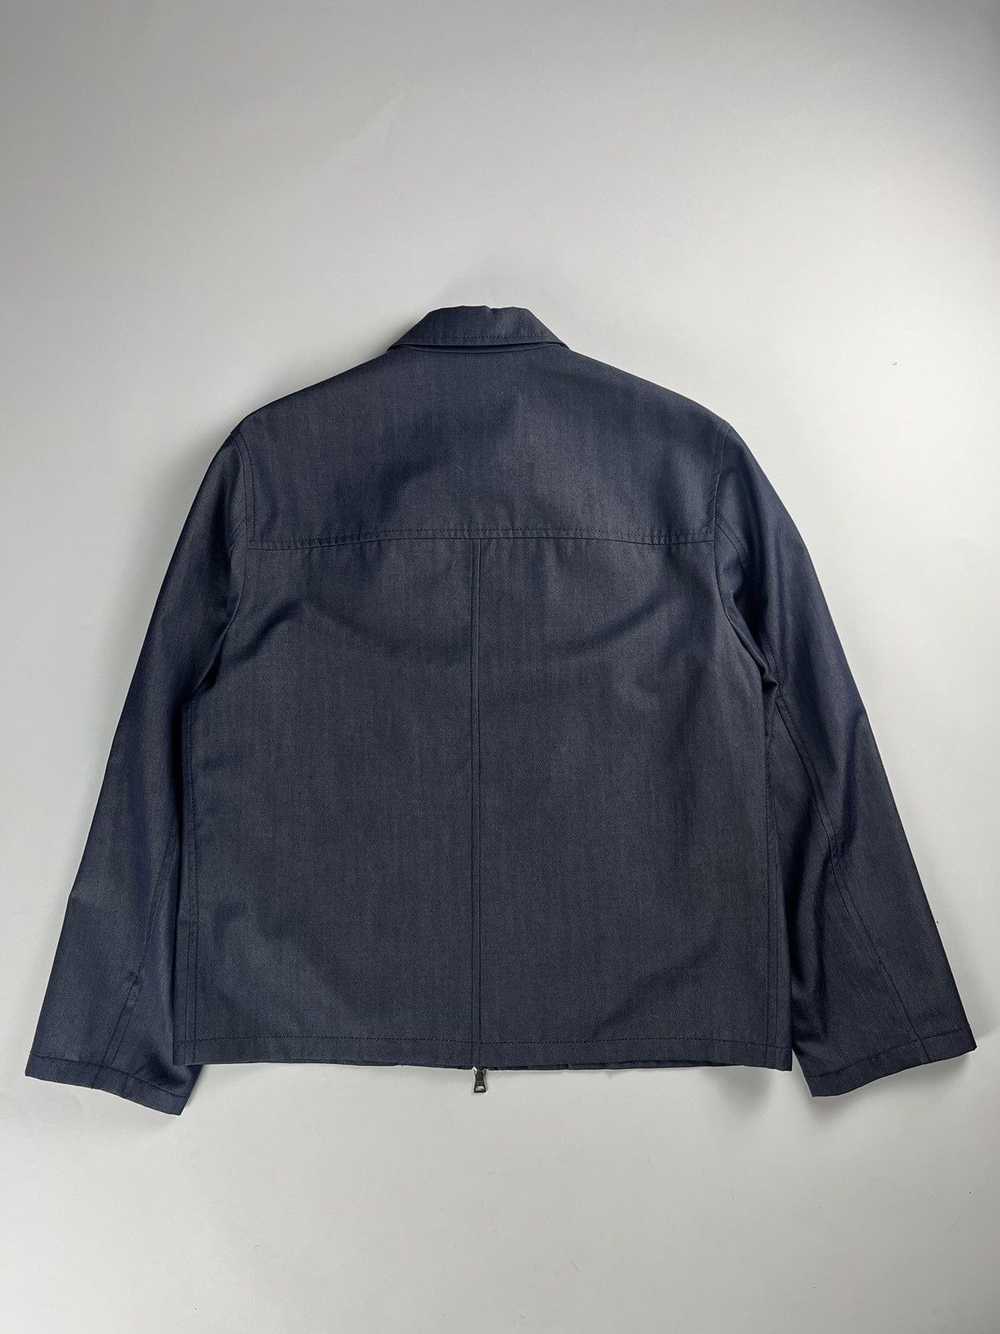 Prada Prada Double Zip Linen Jacket FW 1998 - image 8